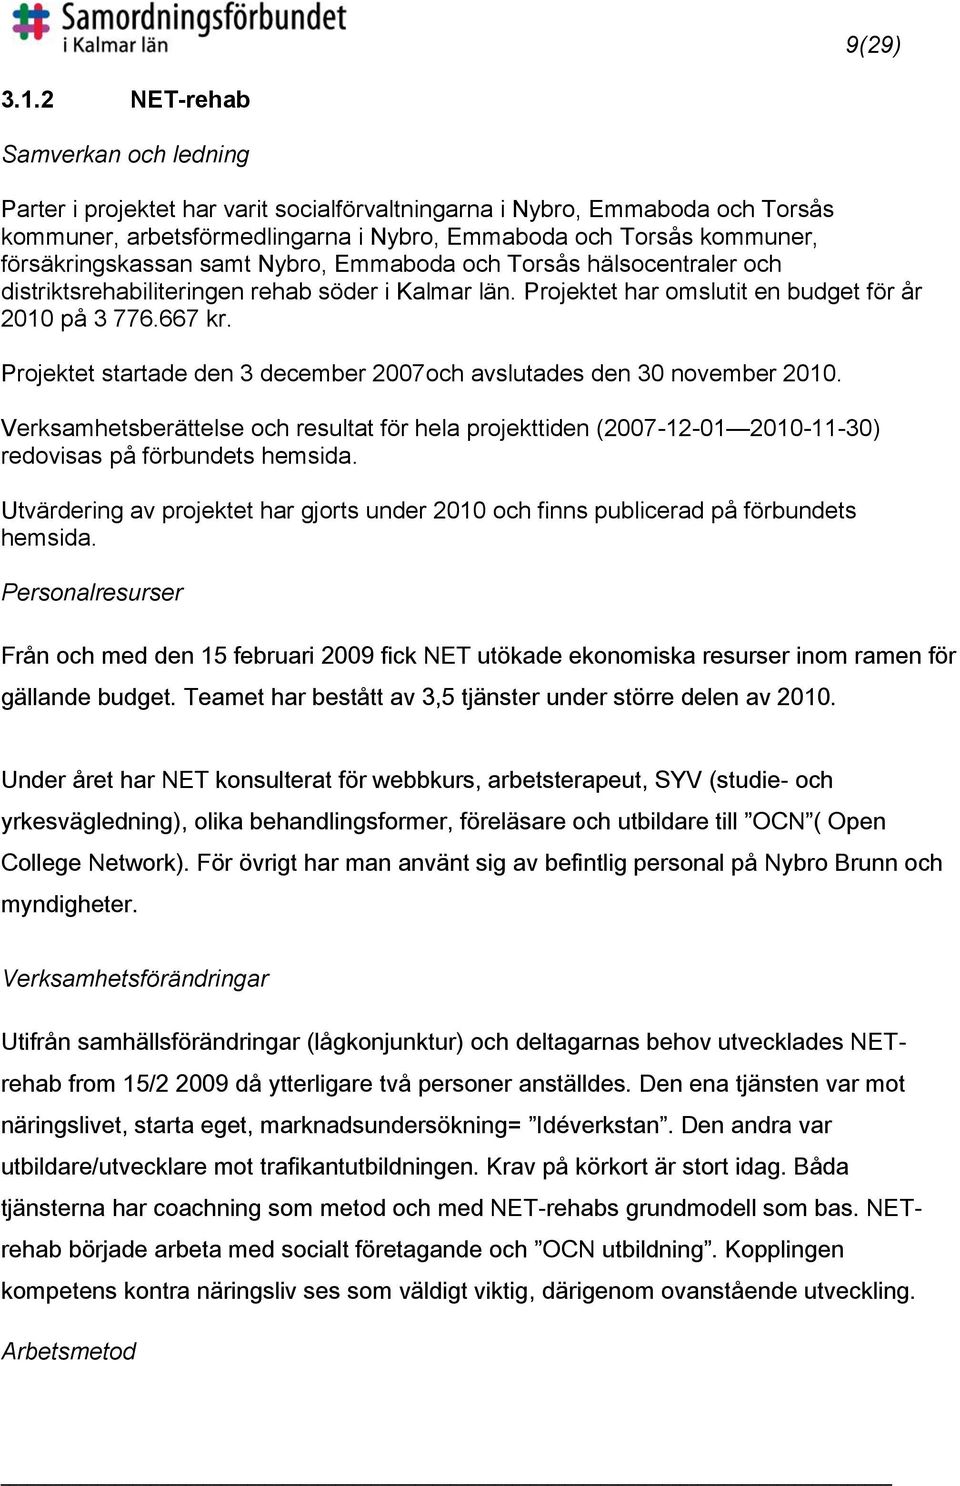 försäkringskassan samt Nybro, Emmaboda och Torsås hälsocentraler och distriktsrehabiliteringen rehab söder i Kalmar län. Projektet har omslutit en budget för år 2010 på 3 776.667 kr.